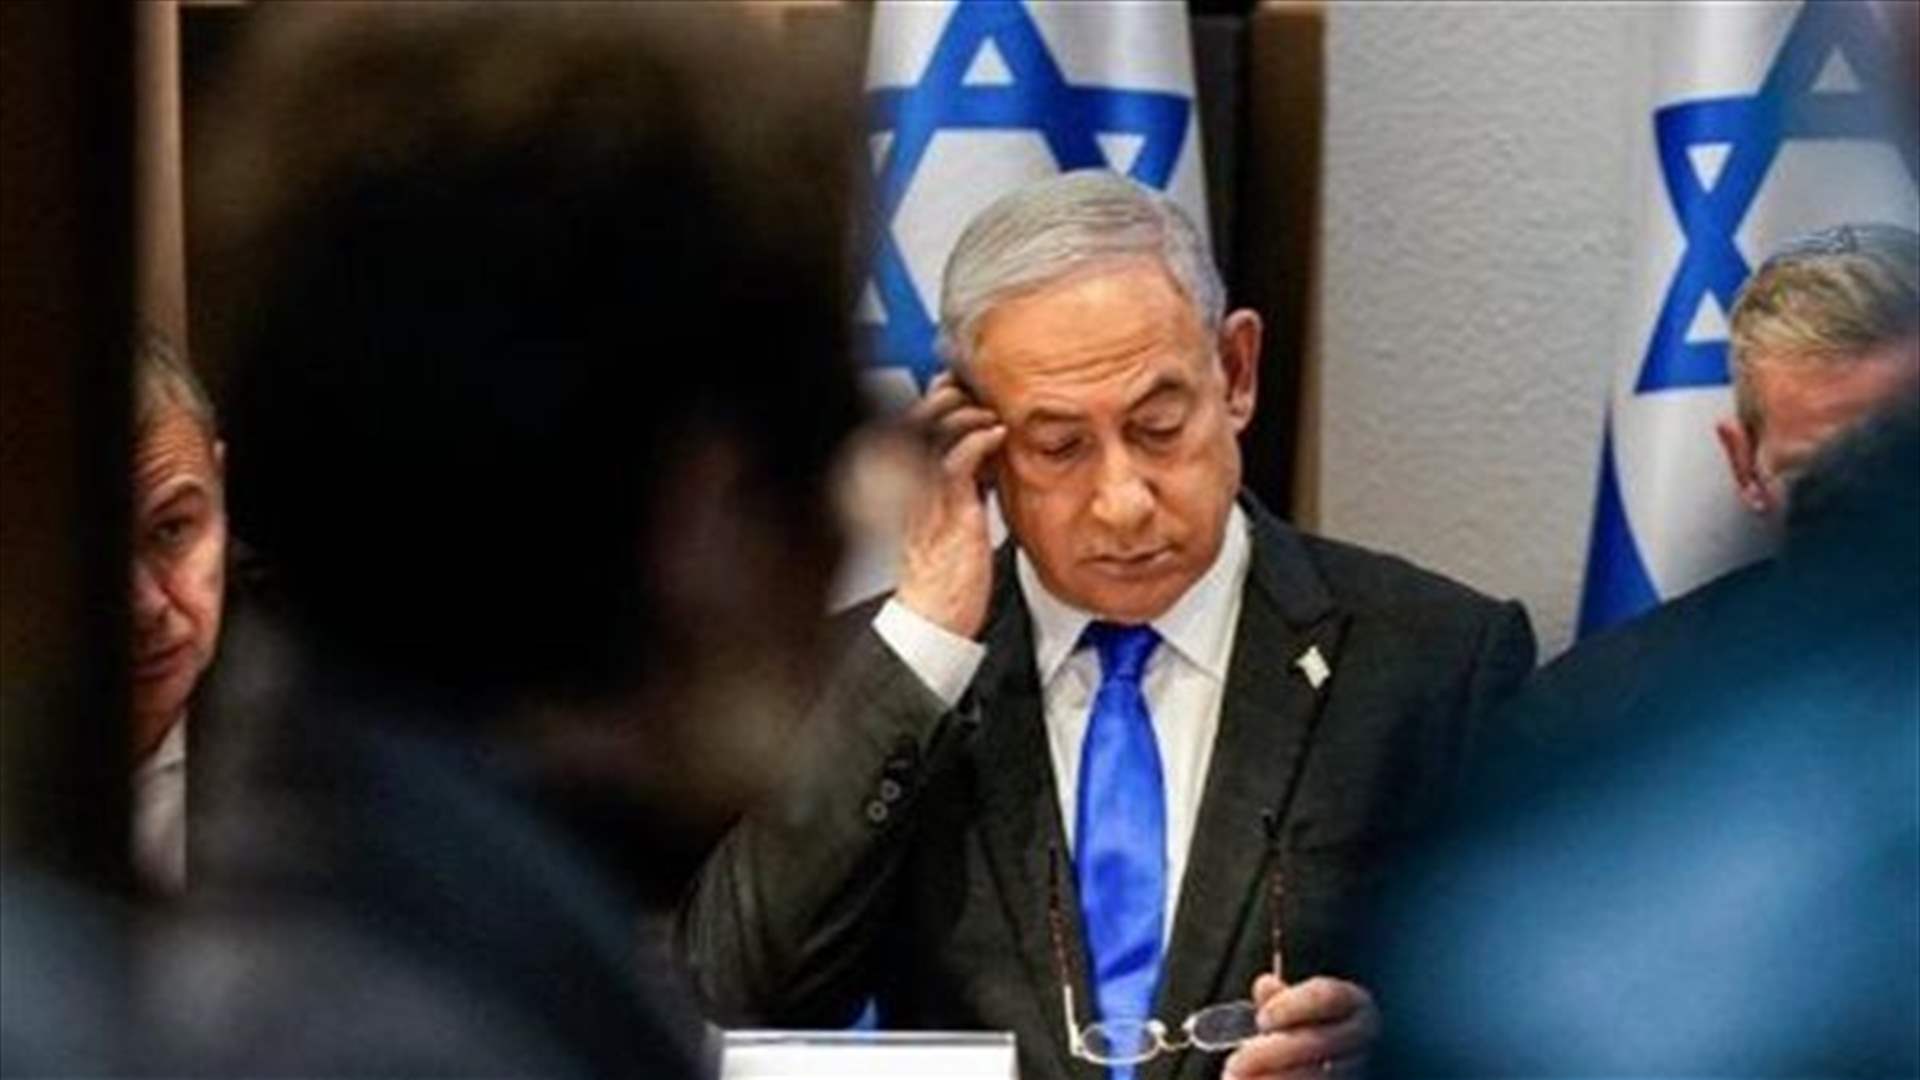 لندن تتراجع عن الطعن في طلب إصدار مذكرة توقيف بحق نتانياهو